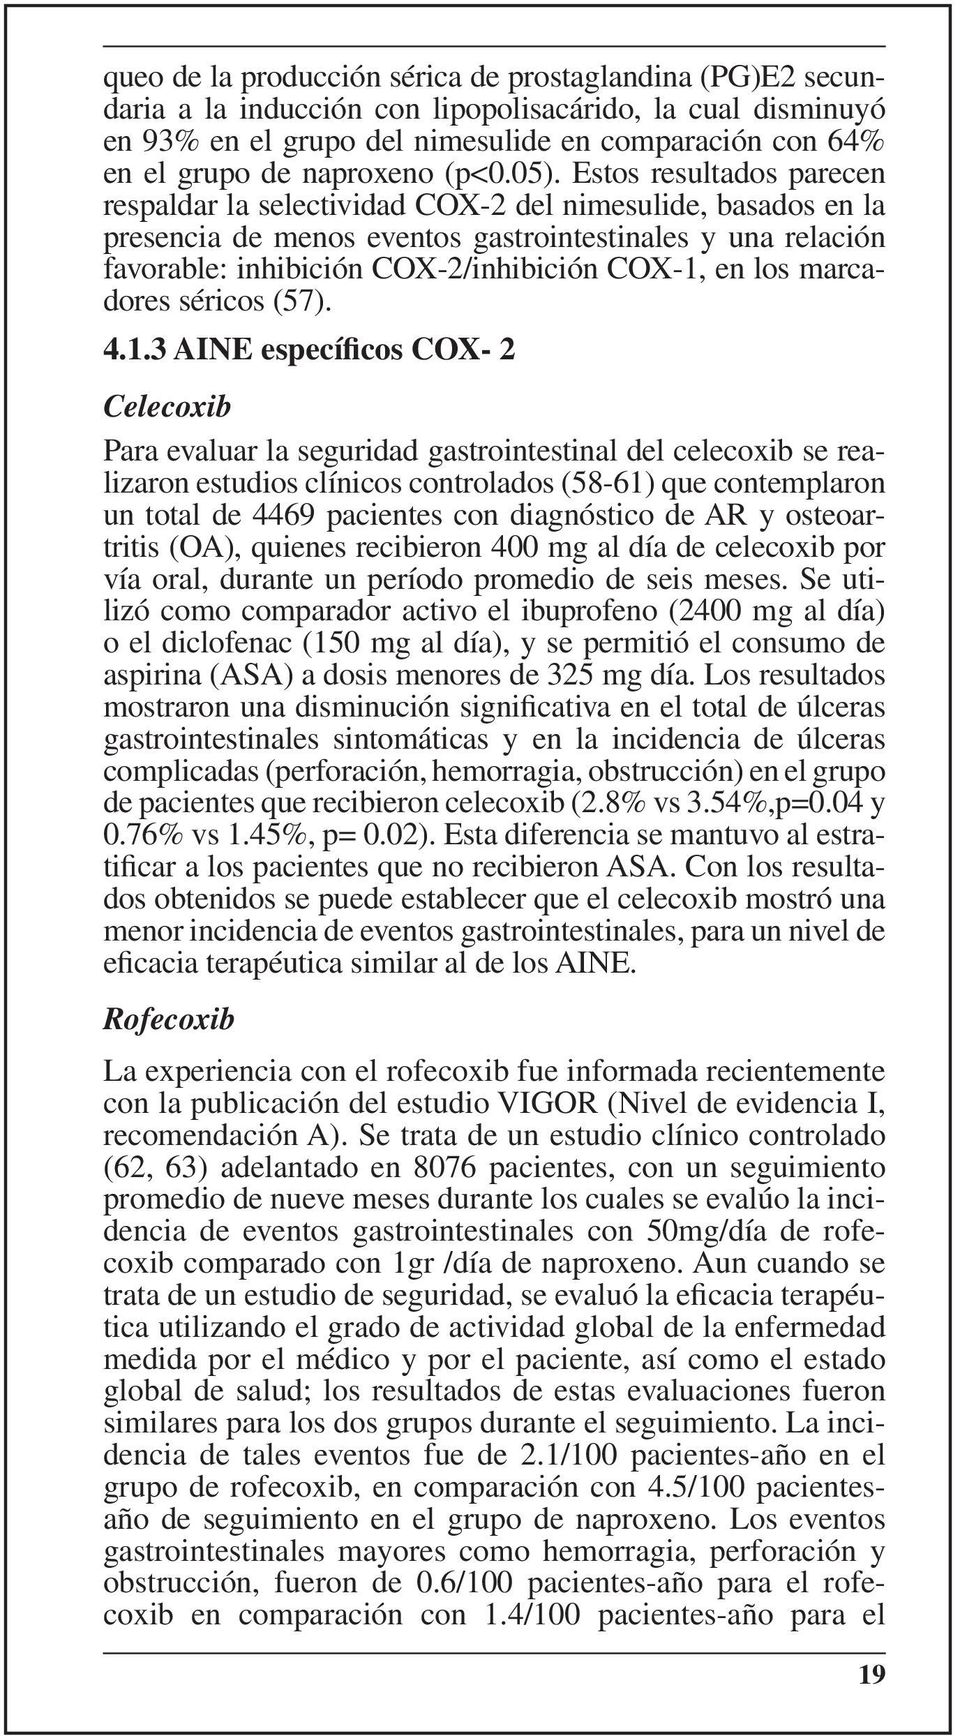 Estos resultados parecen respaldar la selectividad COX-2 del nimesulide, basados en la presencia de menos eventos gastrointestinales y una relación favorable: inhibición COX-2/inhibición COX-1, en